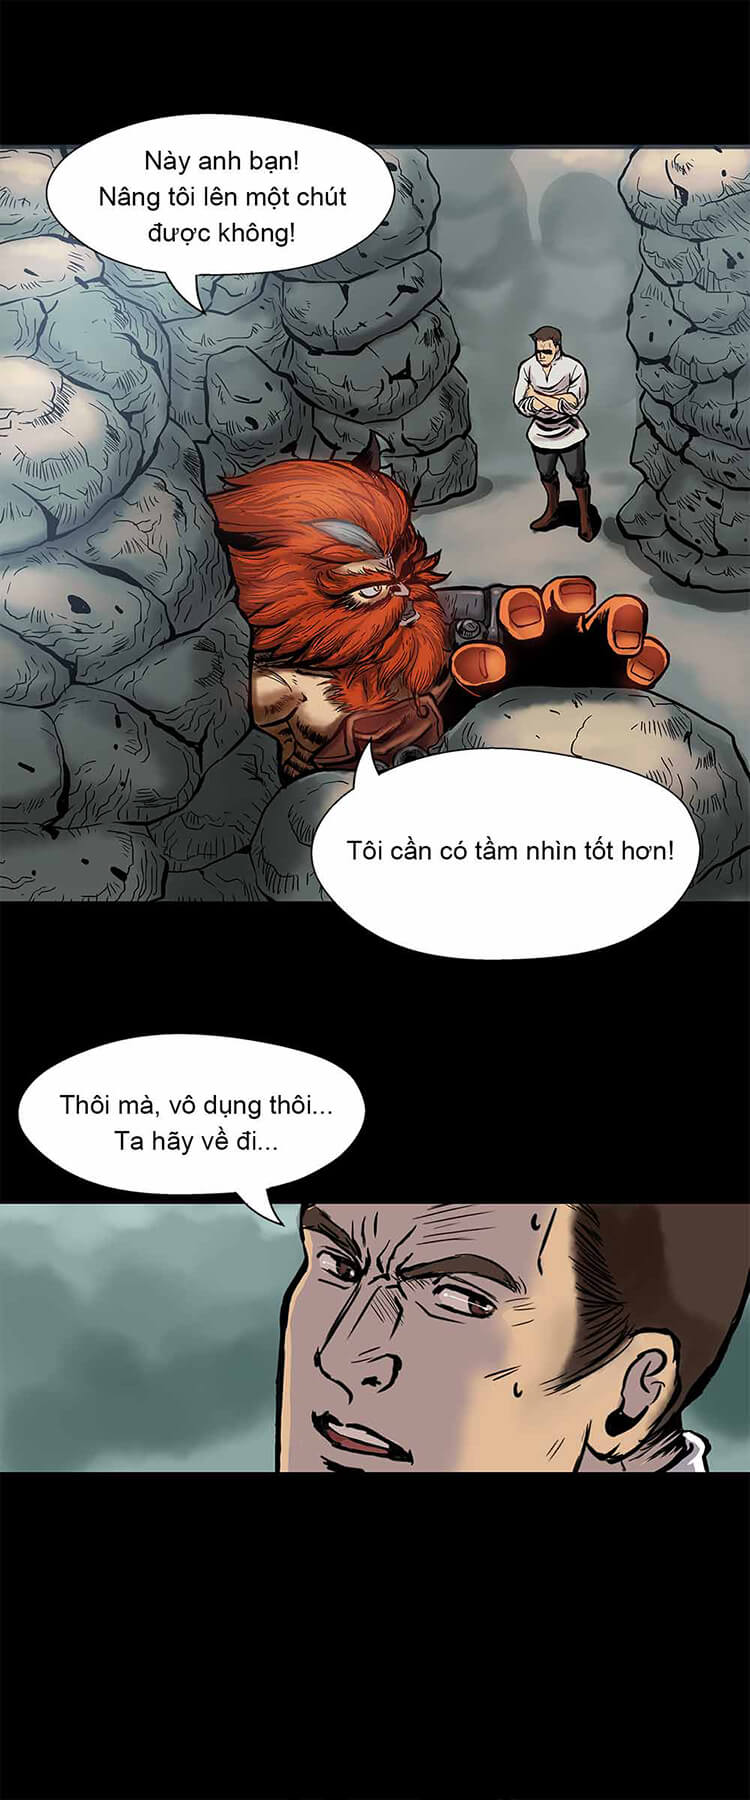 Mobile Legends: Bang Bang tung comic giới thiệu tướng mới Aulus - Ảnh 7